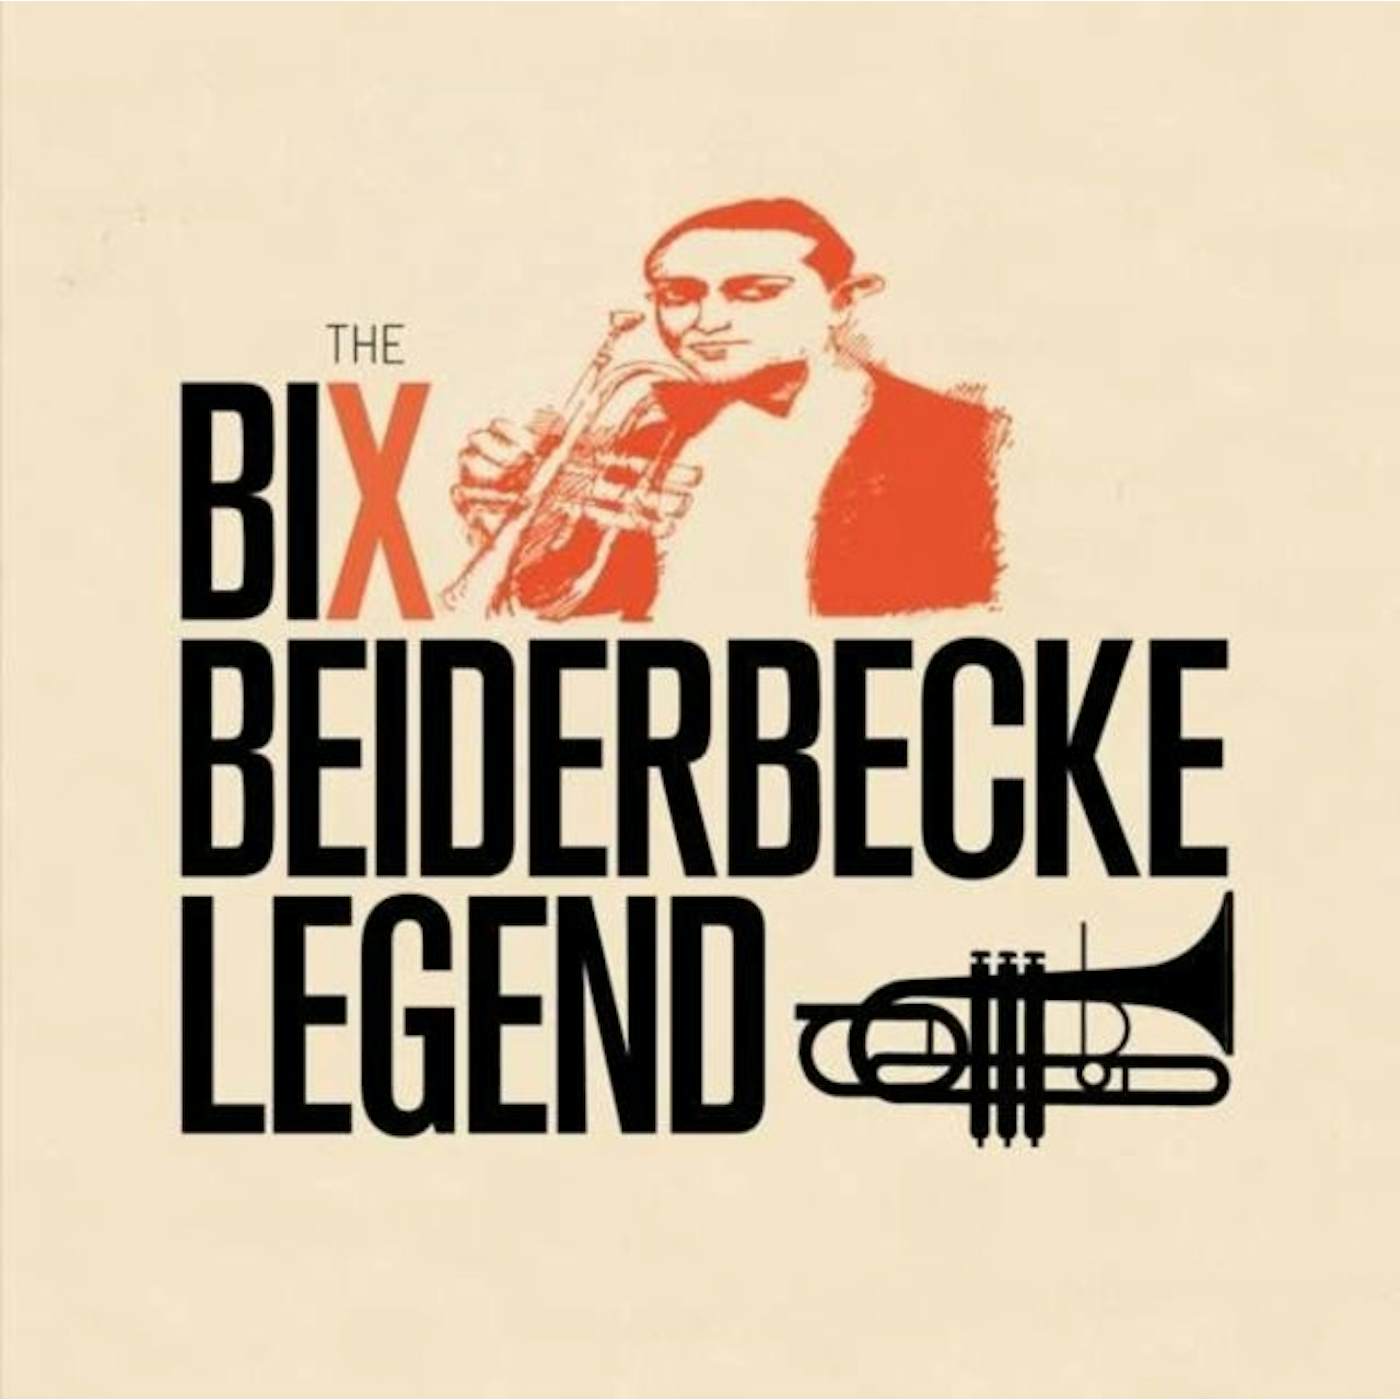 Bix Beiderbecke CD - Legend